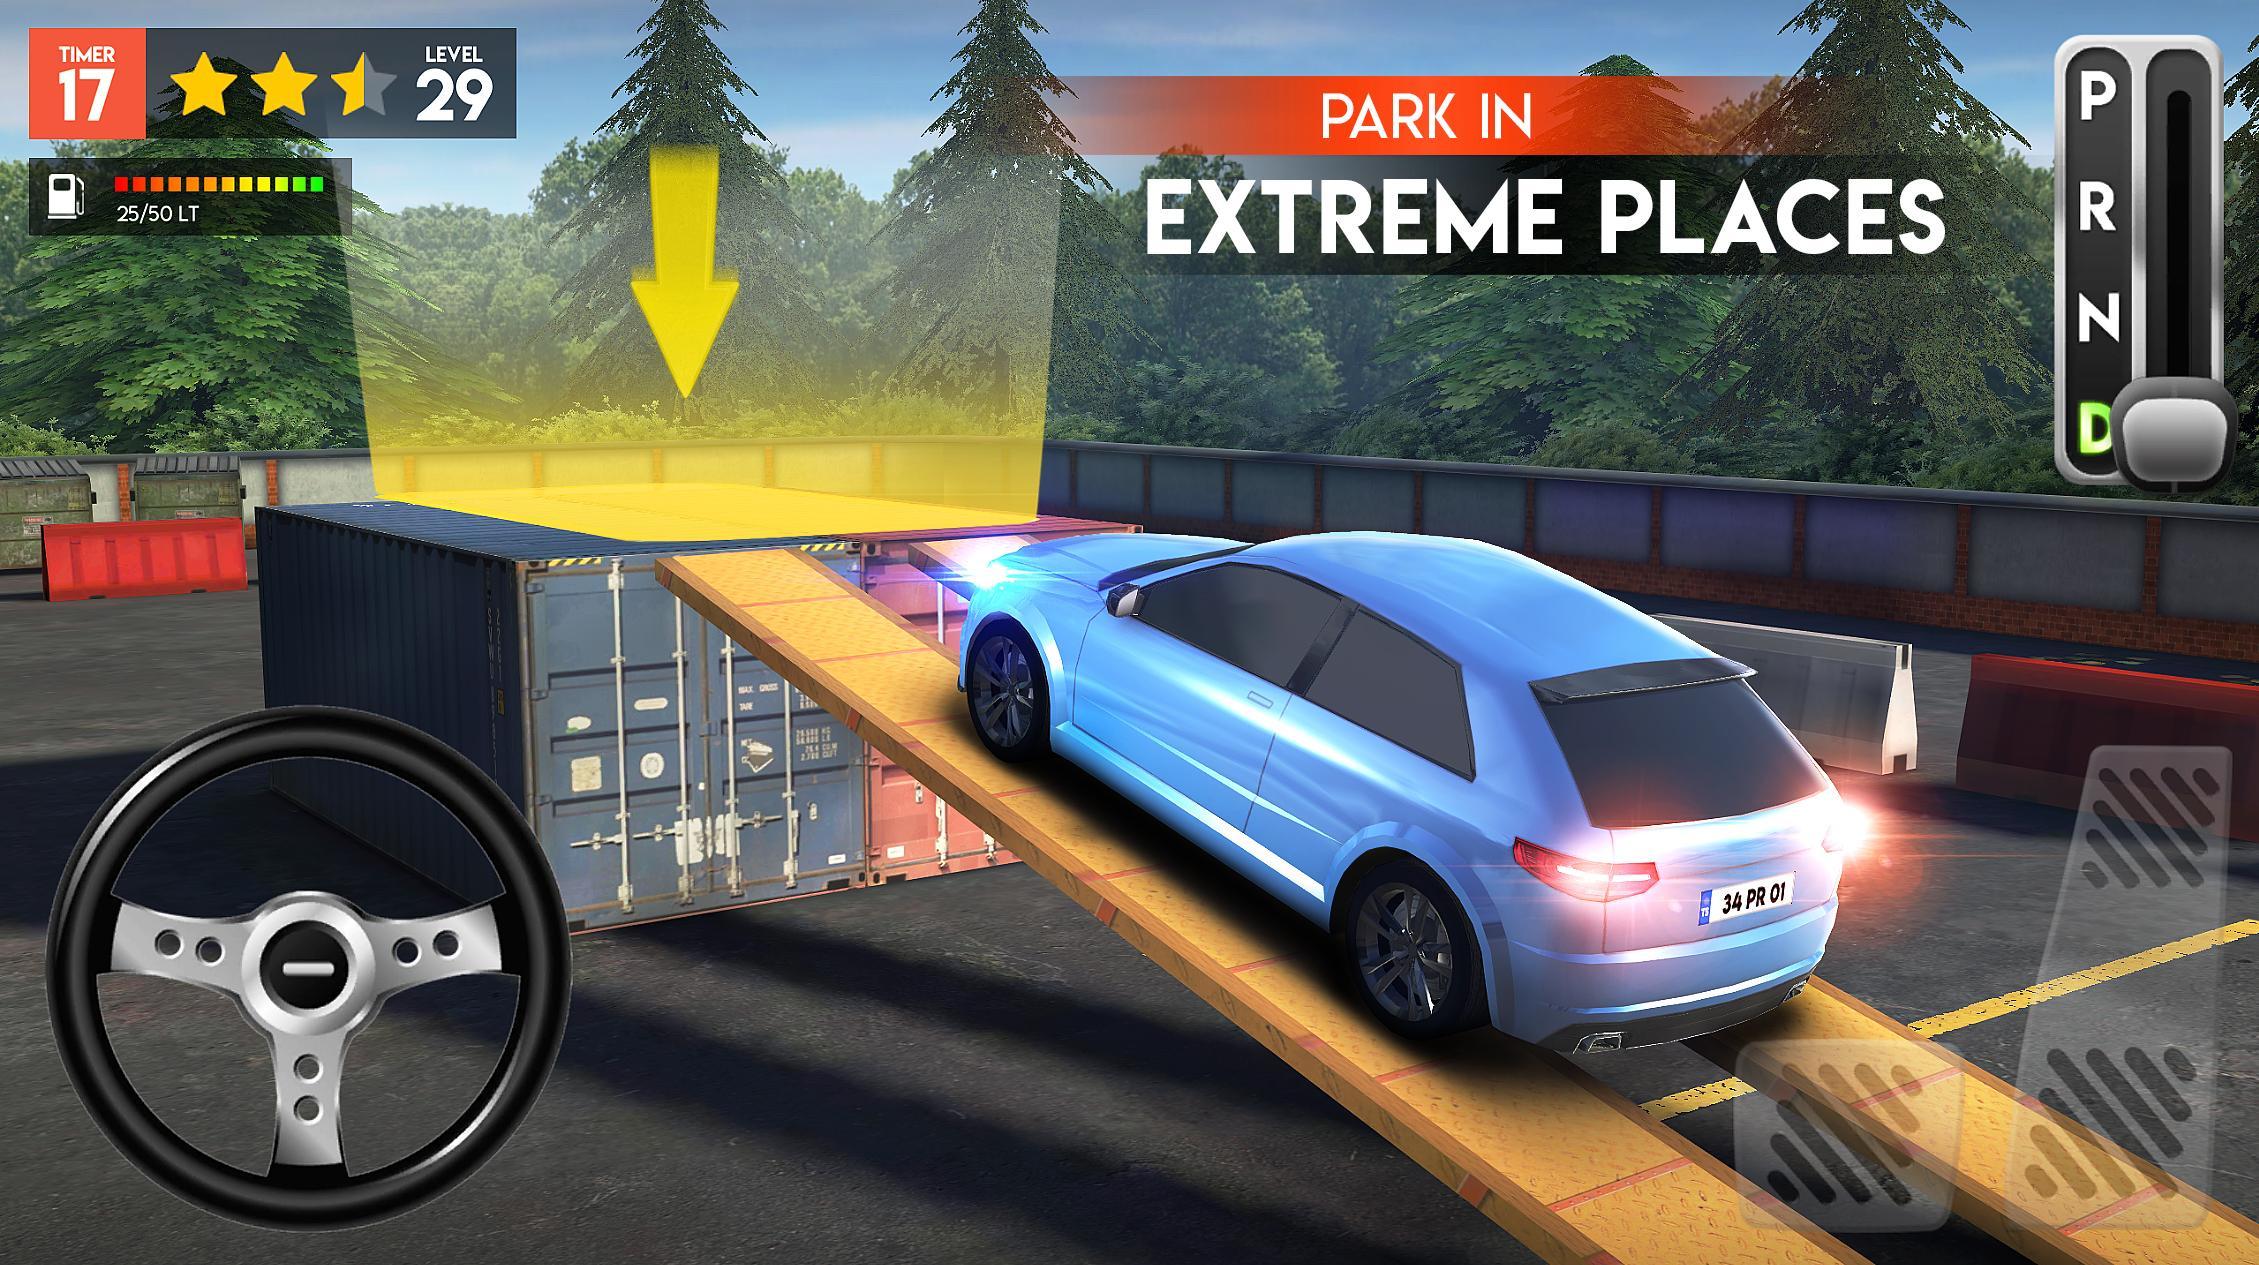 Screenshot 1 of Car Parking Pro - Car Parking Game & Driving Game 0.4